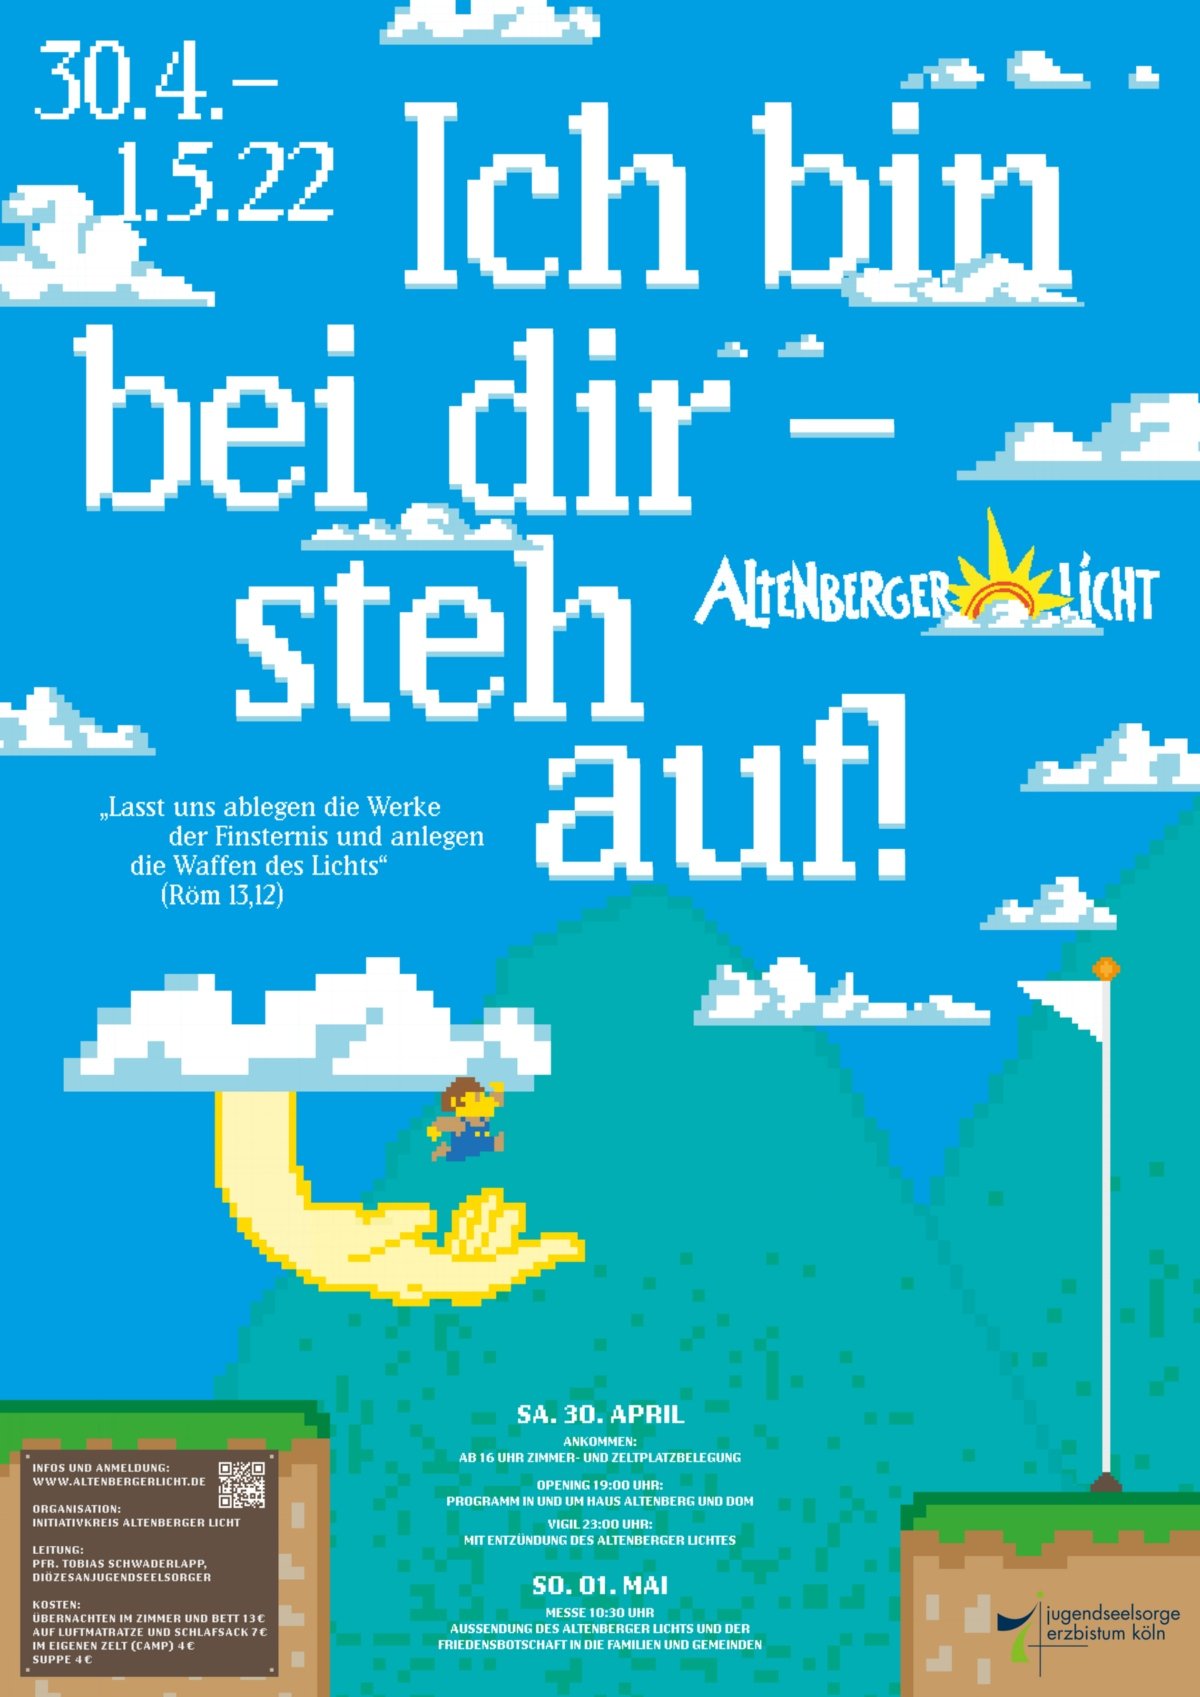 EK_Altenberger-Licht_A3_web_2022-03-07